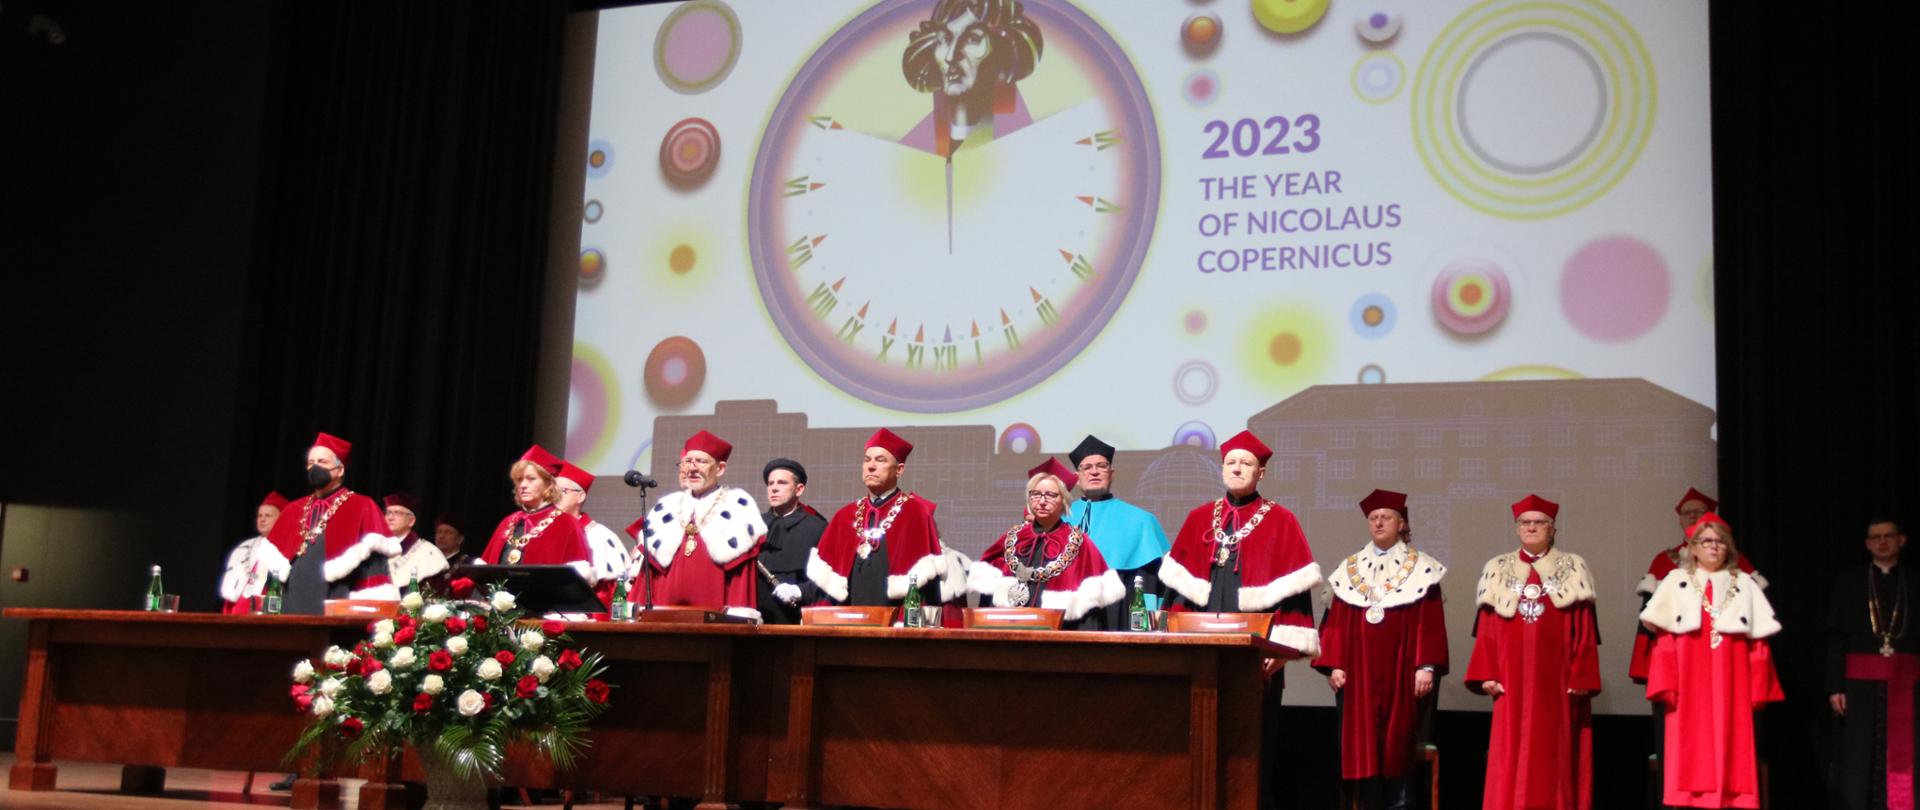 Na podwyższeniu za dużym drewnianym stołem stoi kilkanaście osób w ceremonialnych uniwersyteckich czerwonych strojach, za nimi wielki ekran z napisem 2023 The Year of Nicolaus Copernicus.